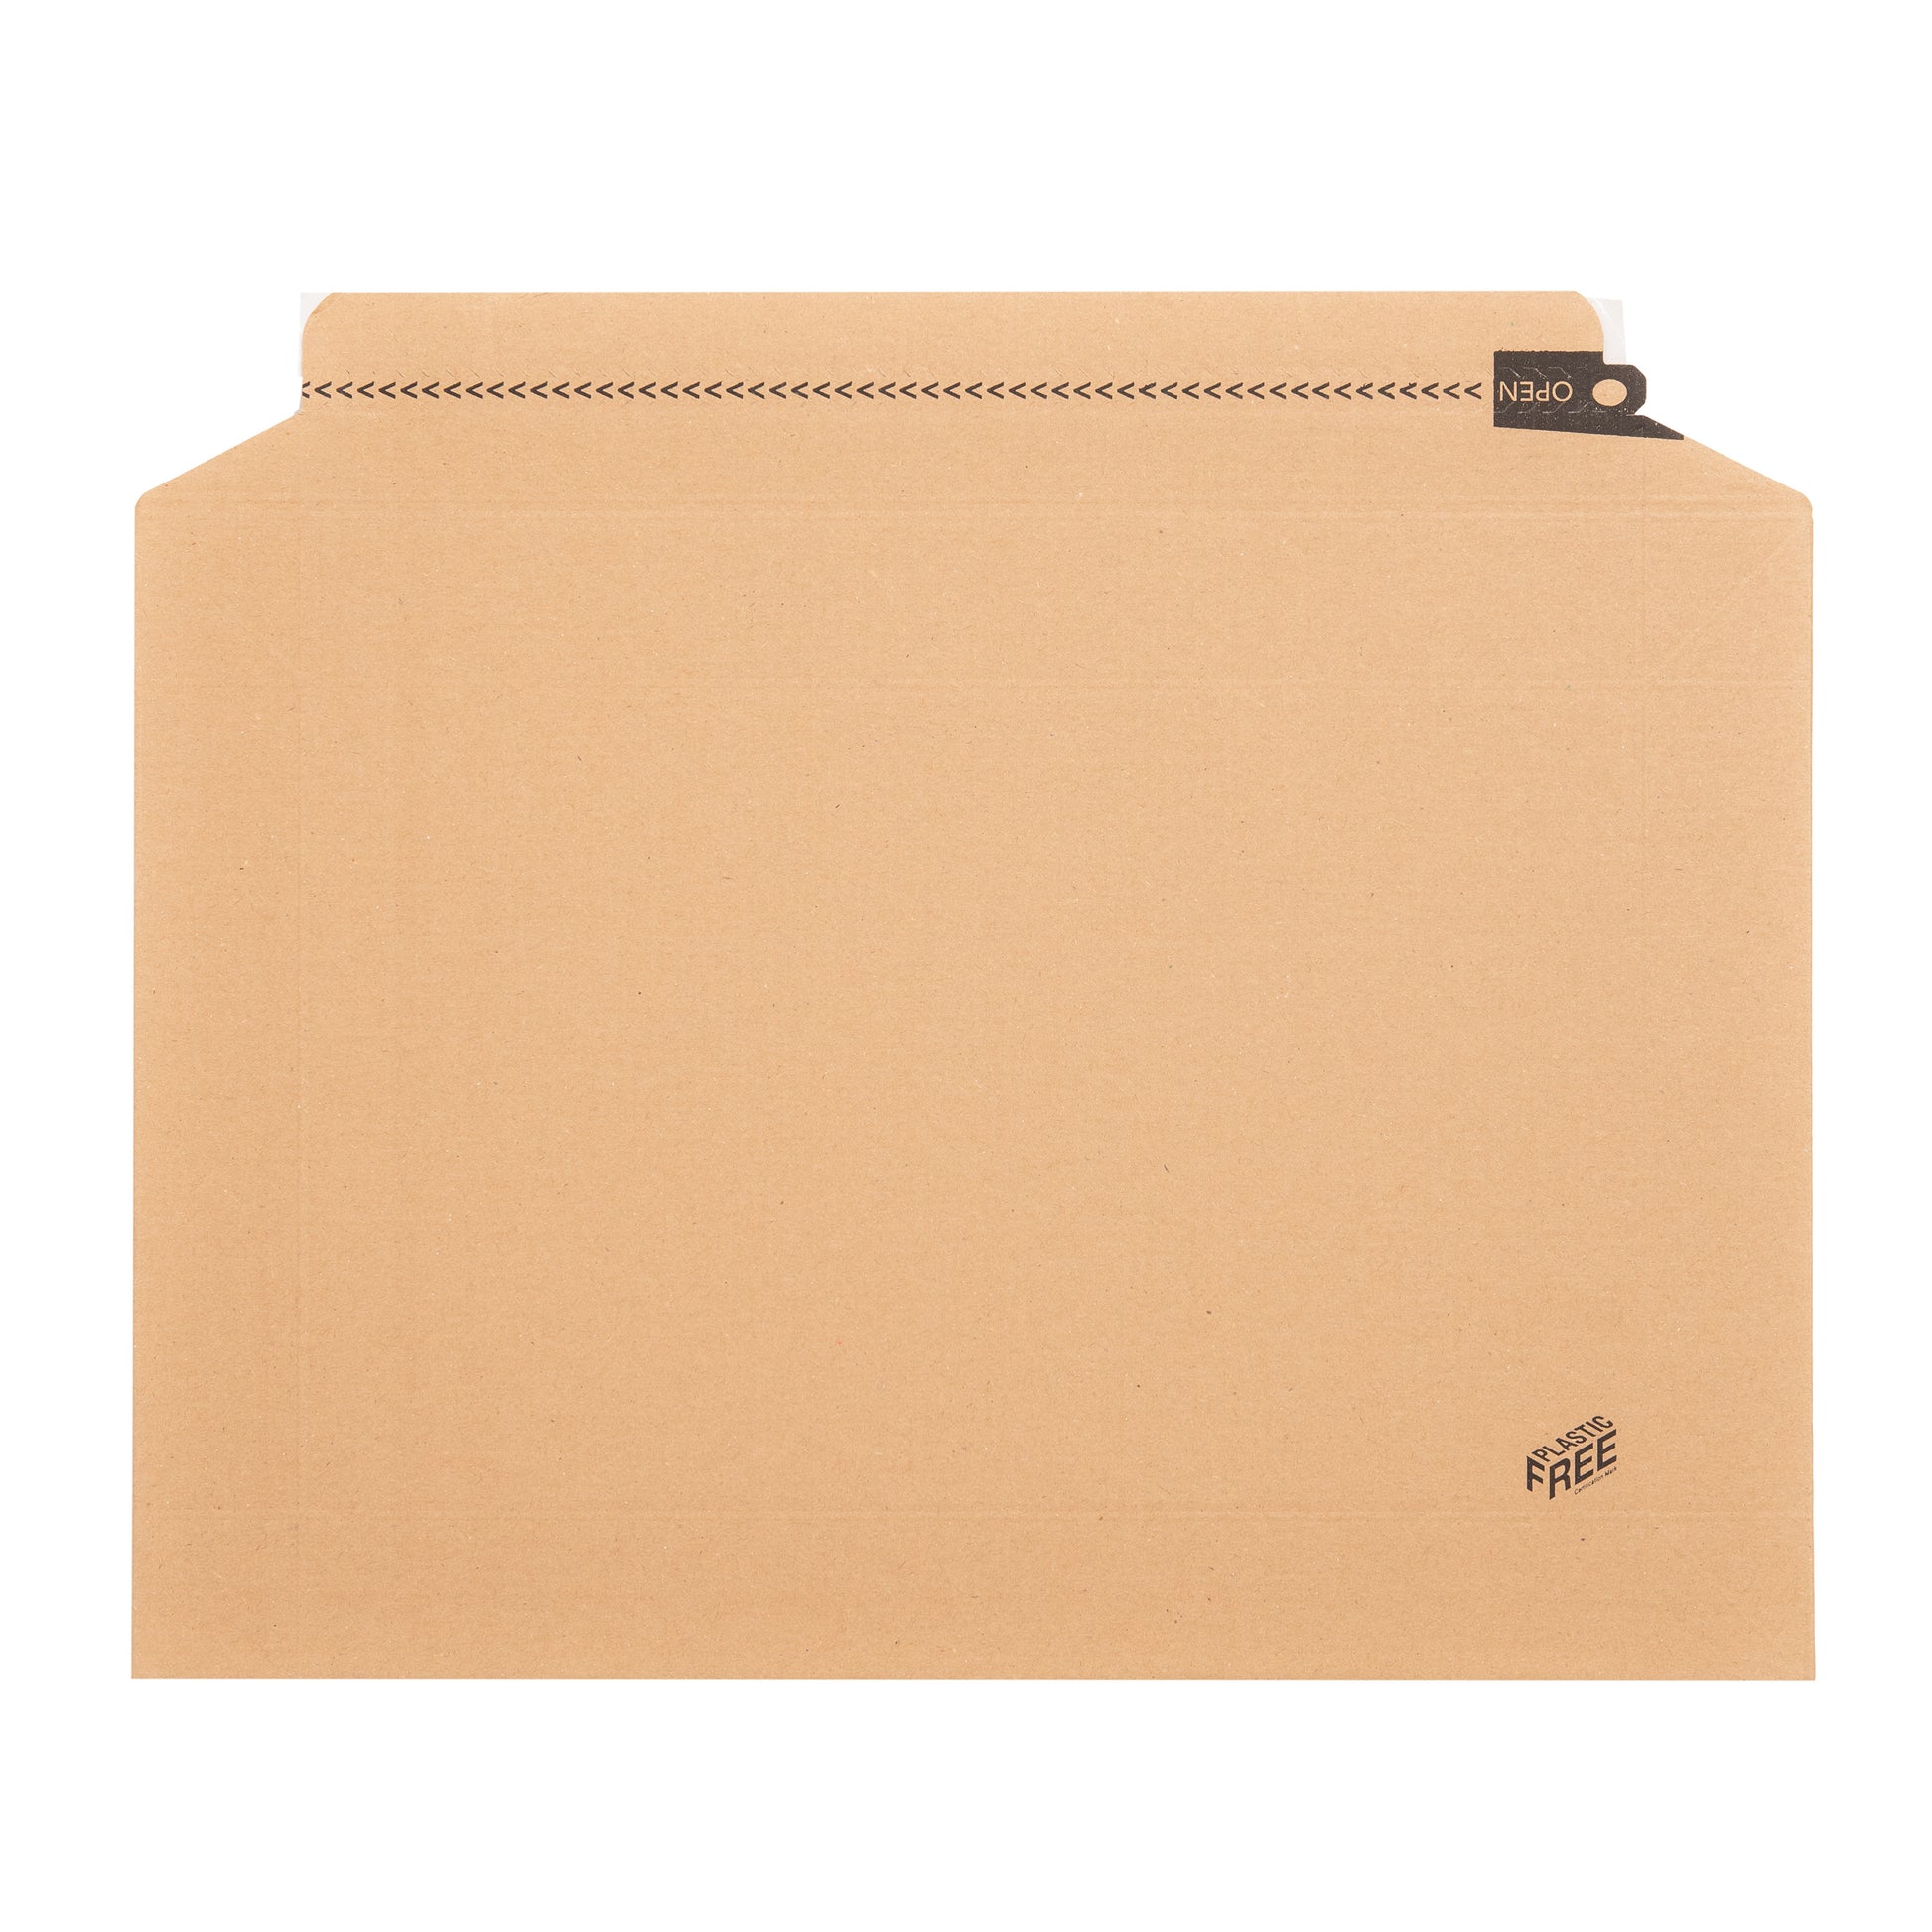 A4 Cardboard Envelope | Lil Packaging